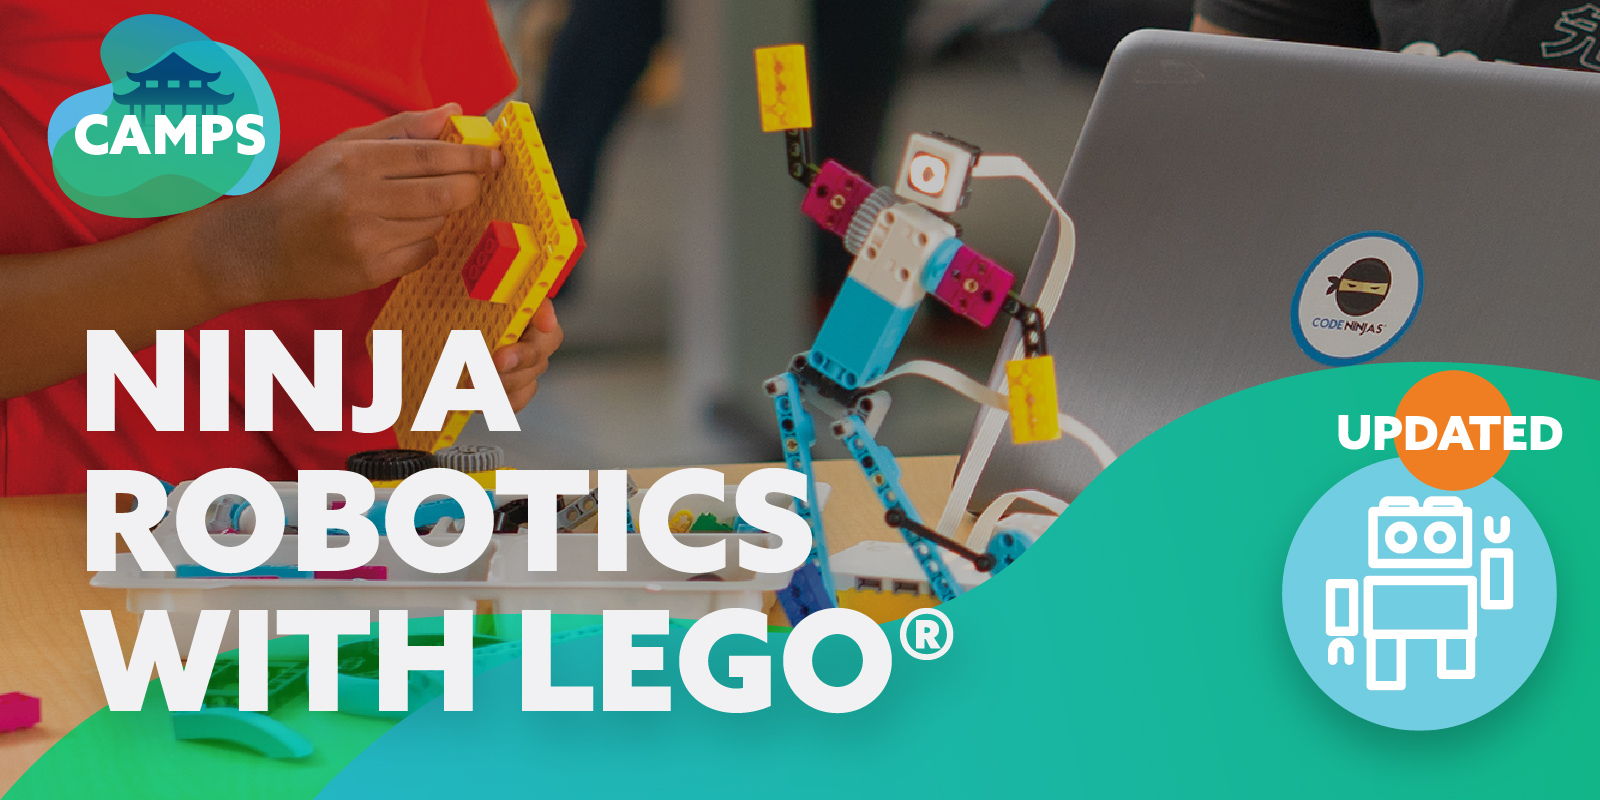 Lego Robotics promotional image